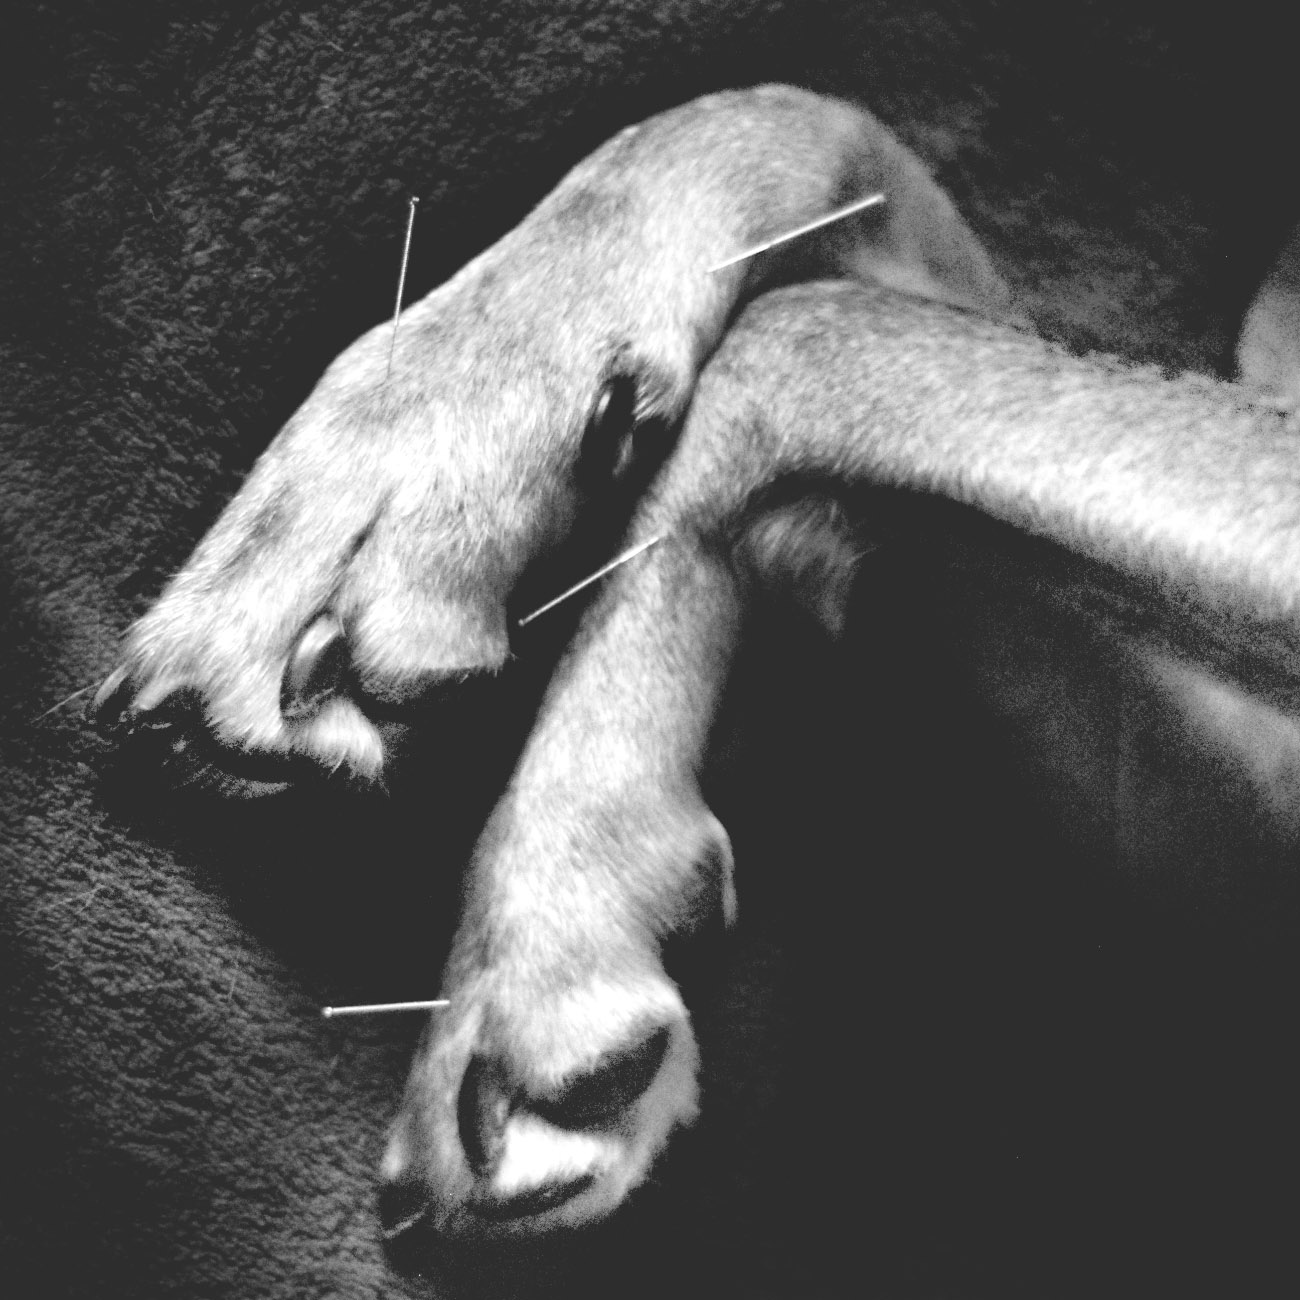 akupunktiohoito koiralle levi lappi kittilä tornio joensuu oulu